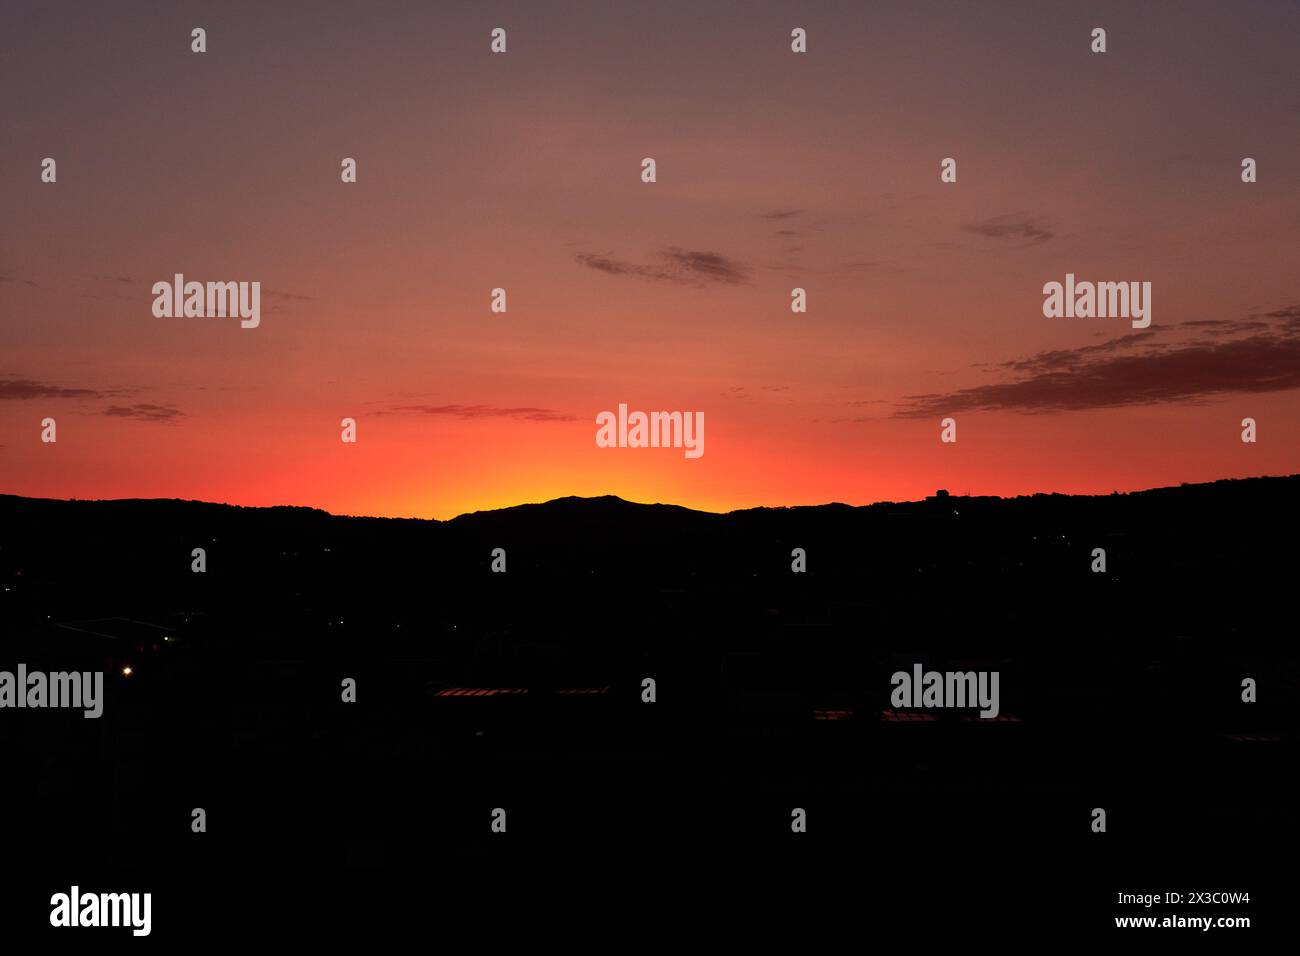 Il cielo arancione rossastro all'alba con le sagome delle montagne crea la sensazione di calma, meditazione e bellezza della natura. Foto Stock